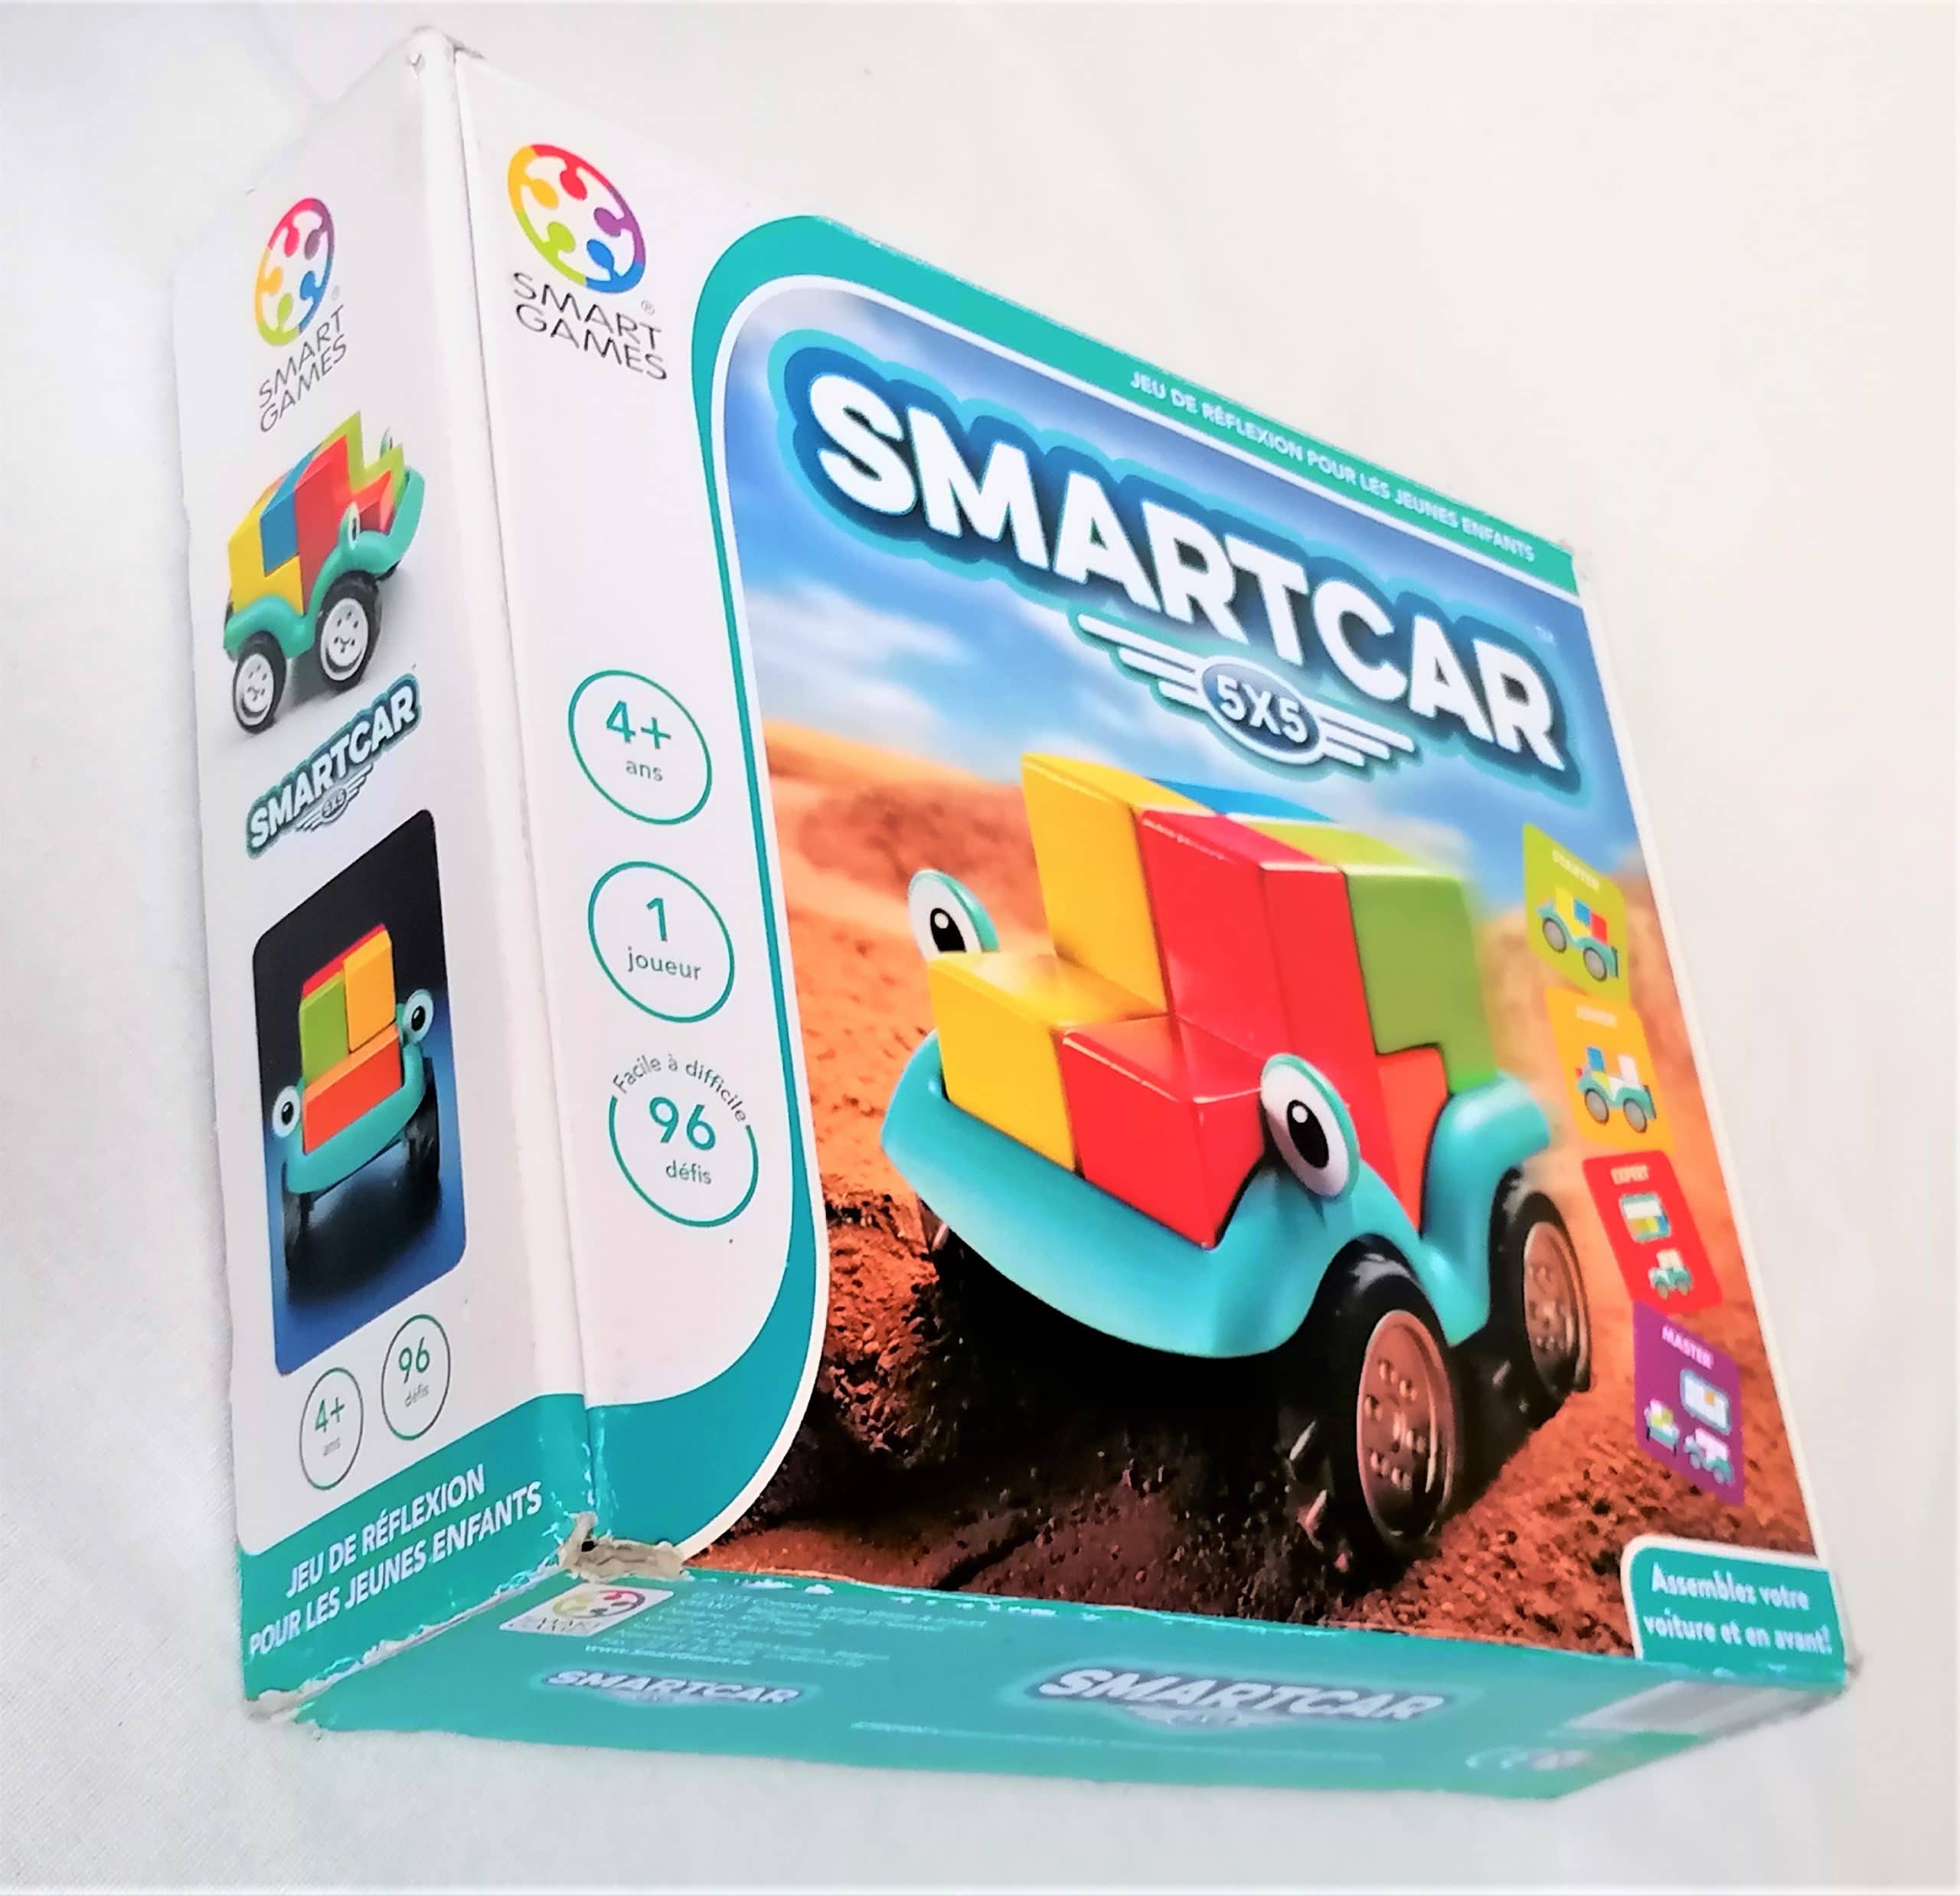 Smartcar 5x5 SmartGames - Grenier d'enfance